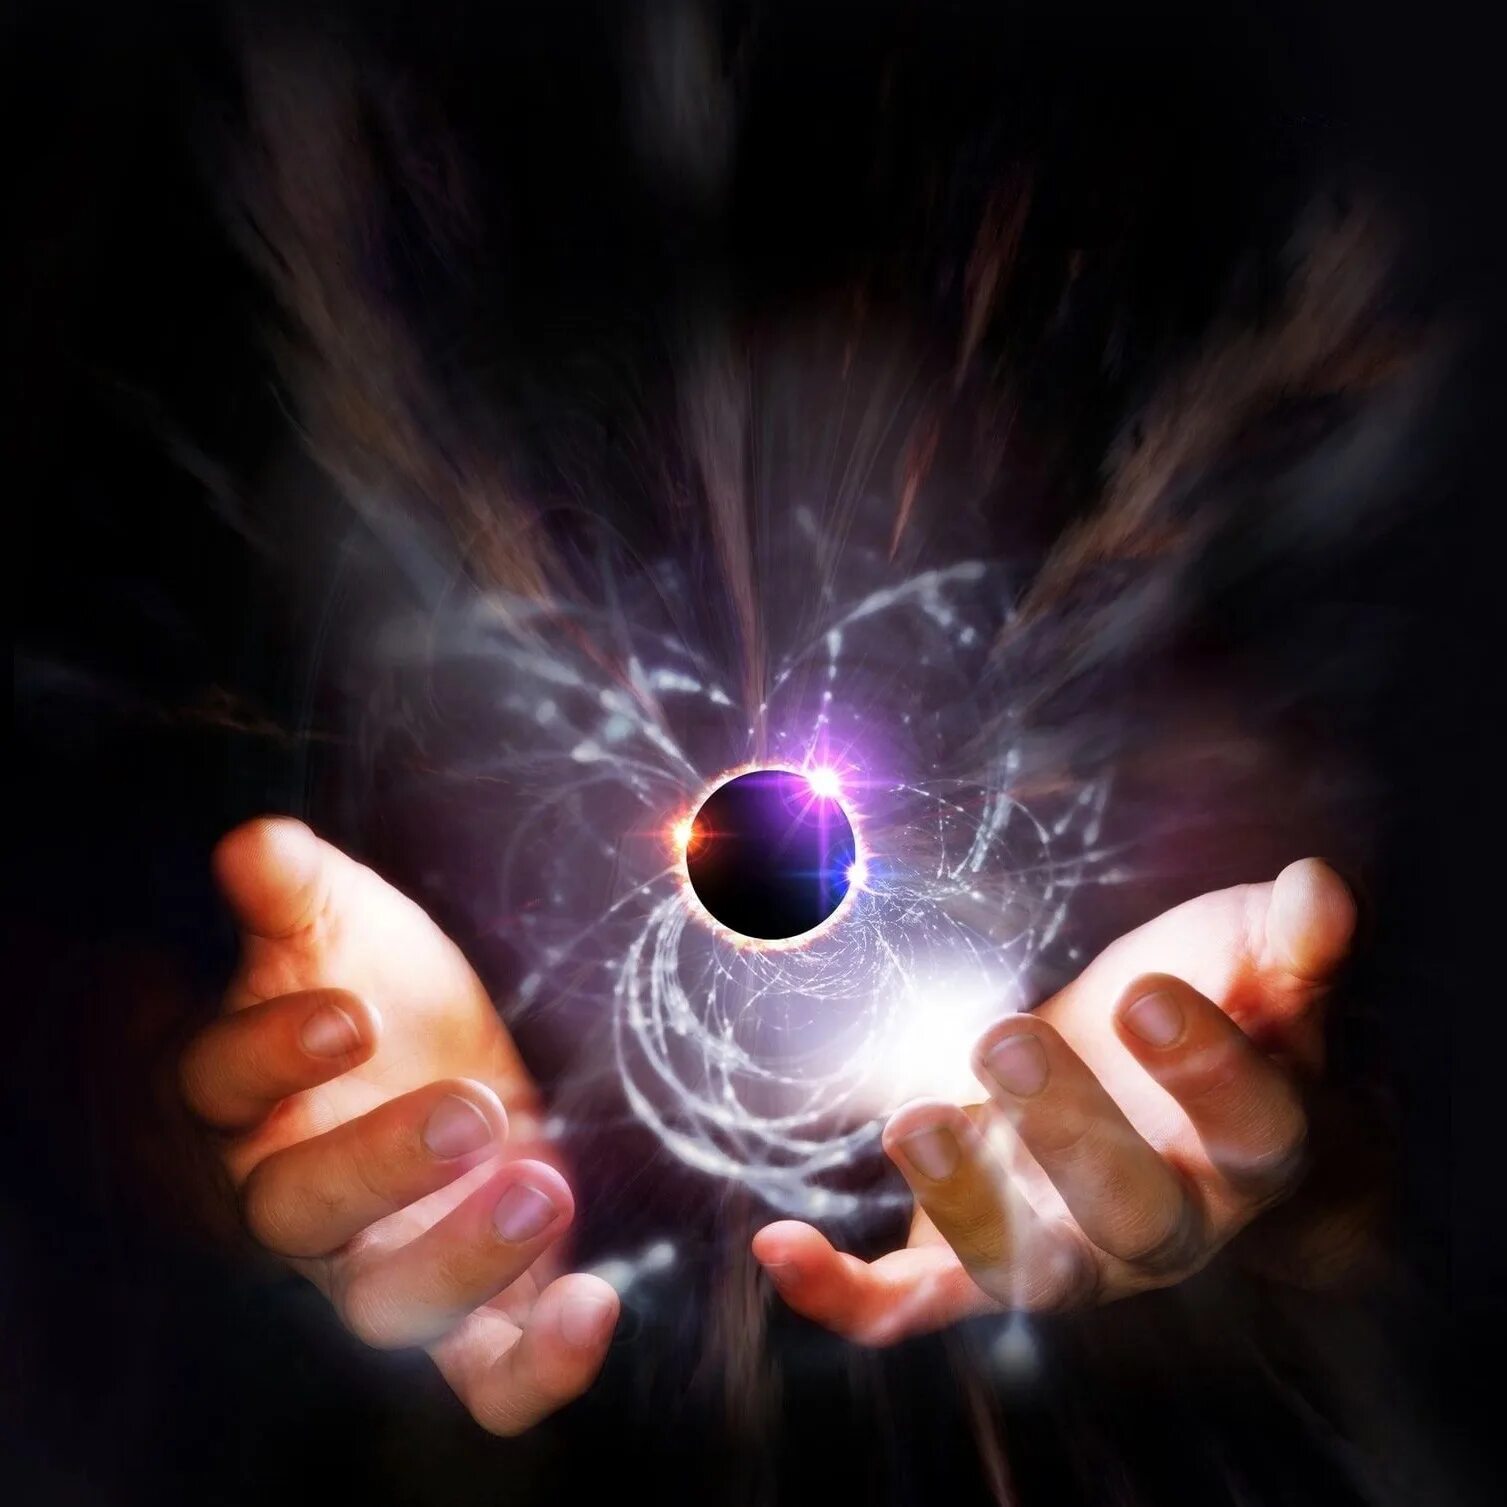 Между ладонями. Энергетический шар в руках. Магия в руках. Магический шар в руках. Энергетический шар между ладоней.